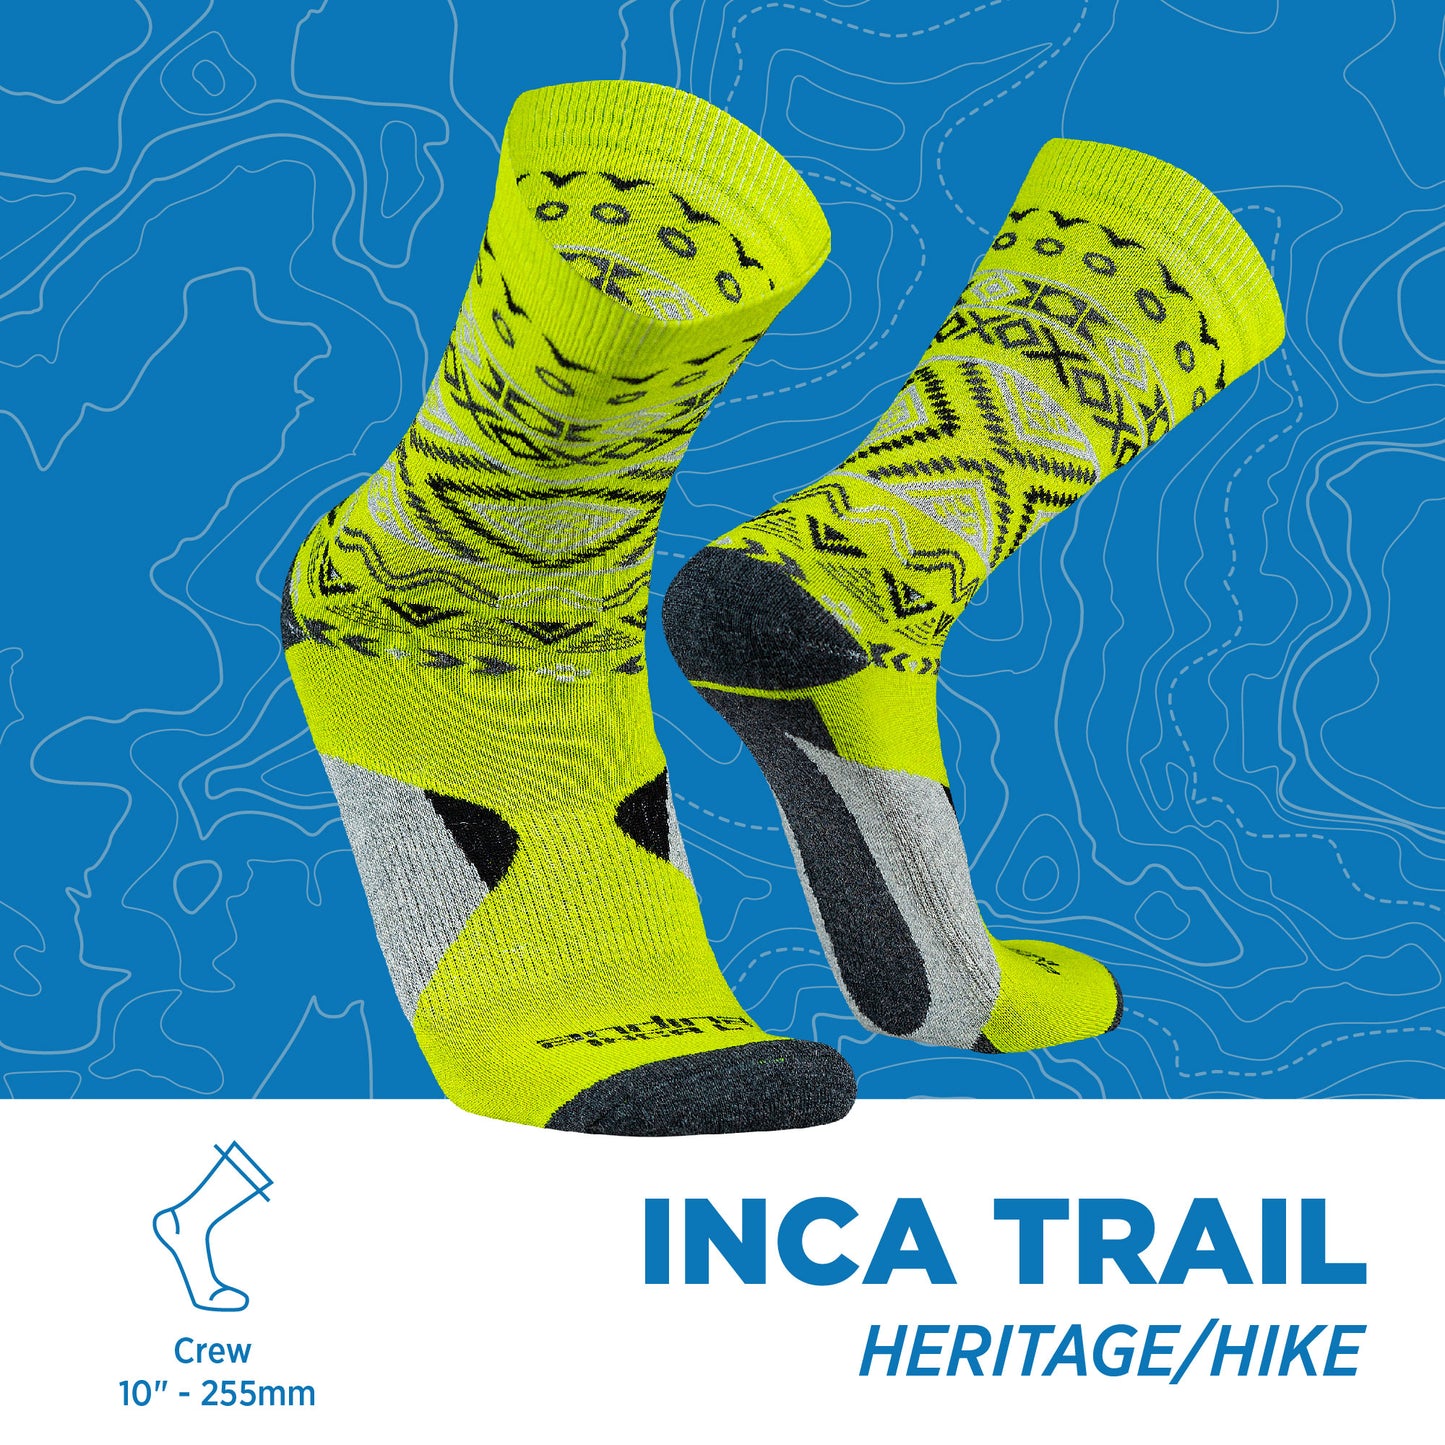 Inca Trail | Heritage & Hike Socks